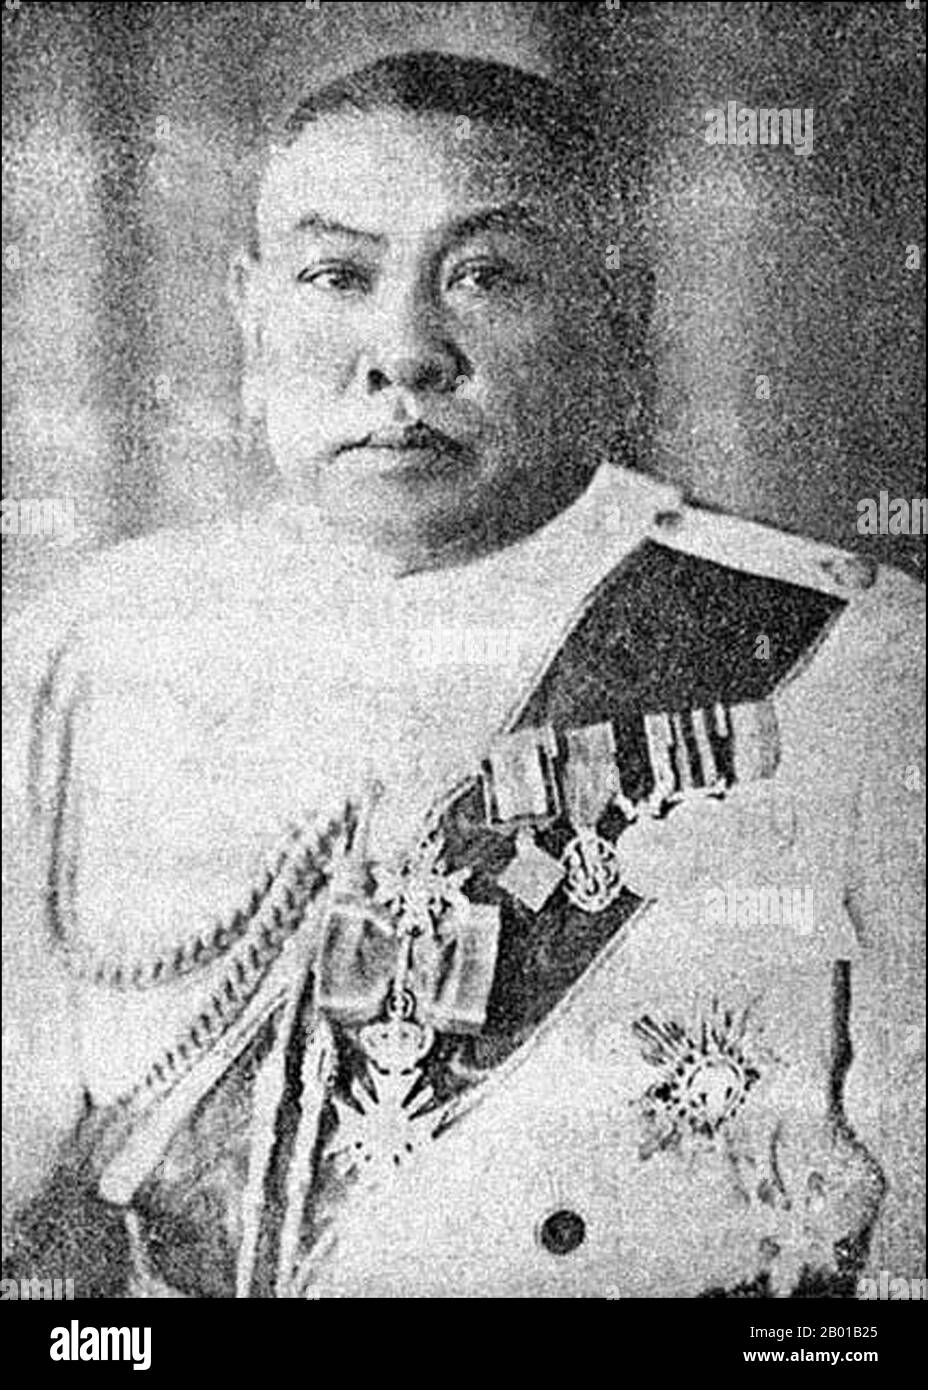 Thailandia: Generale Phohonyothin Phahonyothin (29 marzo 1887 - 14 febbraio 1947), primo ministro della Thailandia (r. 1933-1938), c.. 1930s. Phraya Phahon Phonphayuhasen, nato come Phot Phahonyothin, è stato un leader militare e politico tailandese. Parte di un gruppo di cospiratori noti come i 'quattro moschettieri', fu un leader nel Khana Ratsadon ('Partito popolare') che ha istigato la rivoluzione del 1932 per porre fine alla monarchia assoluta del Siam e stabilire uno stato costituzionale. Divenne il secondo primo ministro del Siam nel 1933 dopo aver estirpato il suo predecessore in un colpo di Stato. Si ritirò nel 1938. Foto Stock